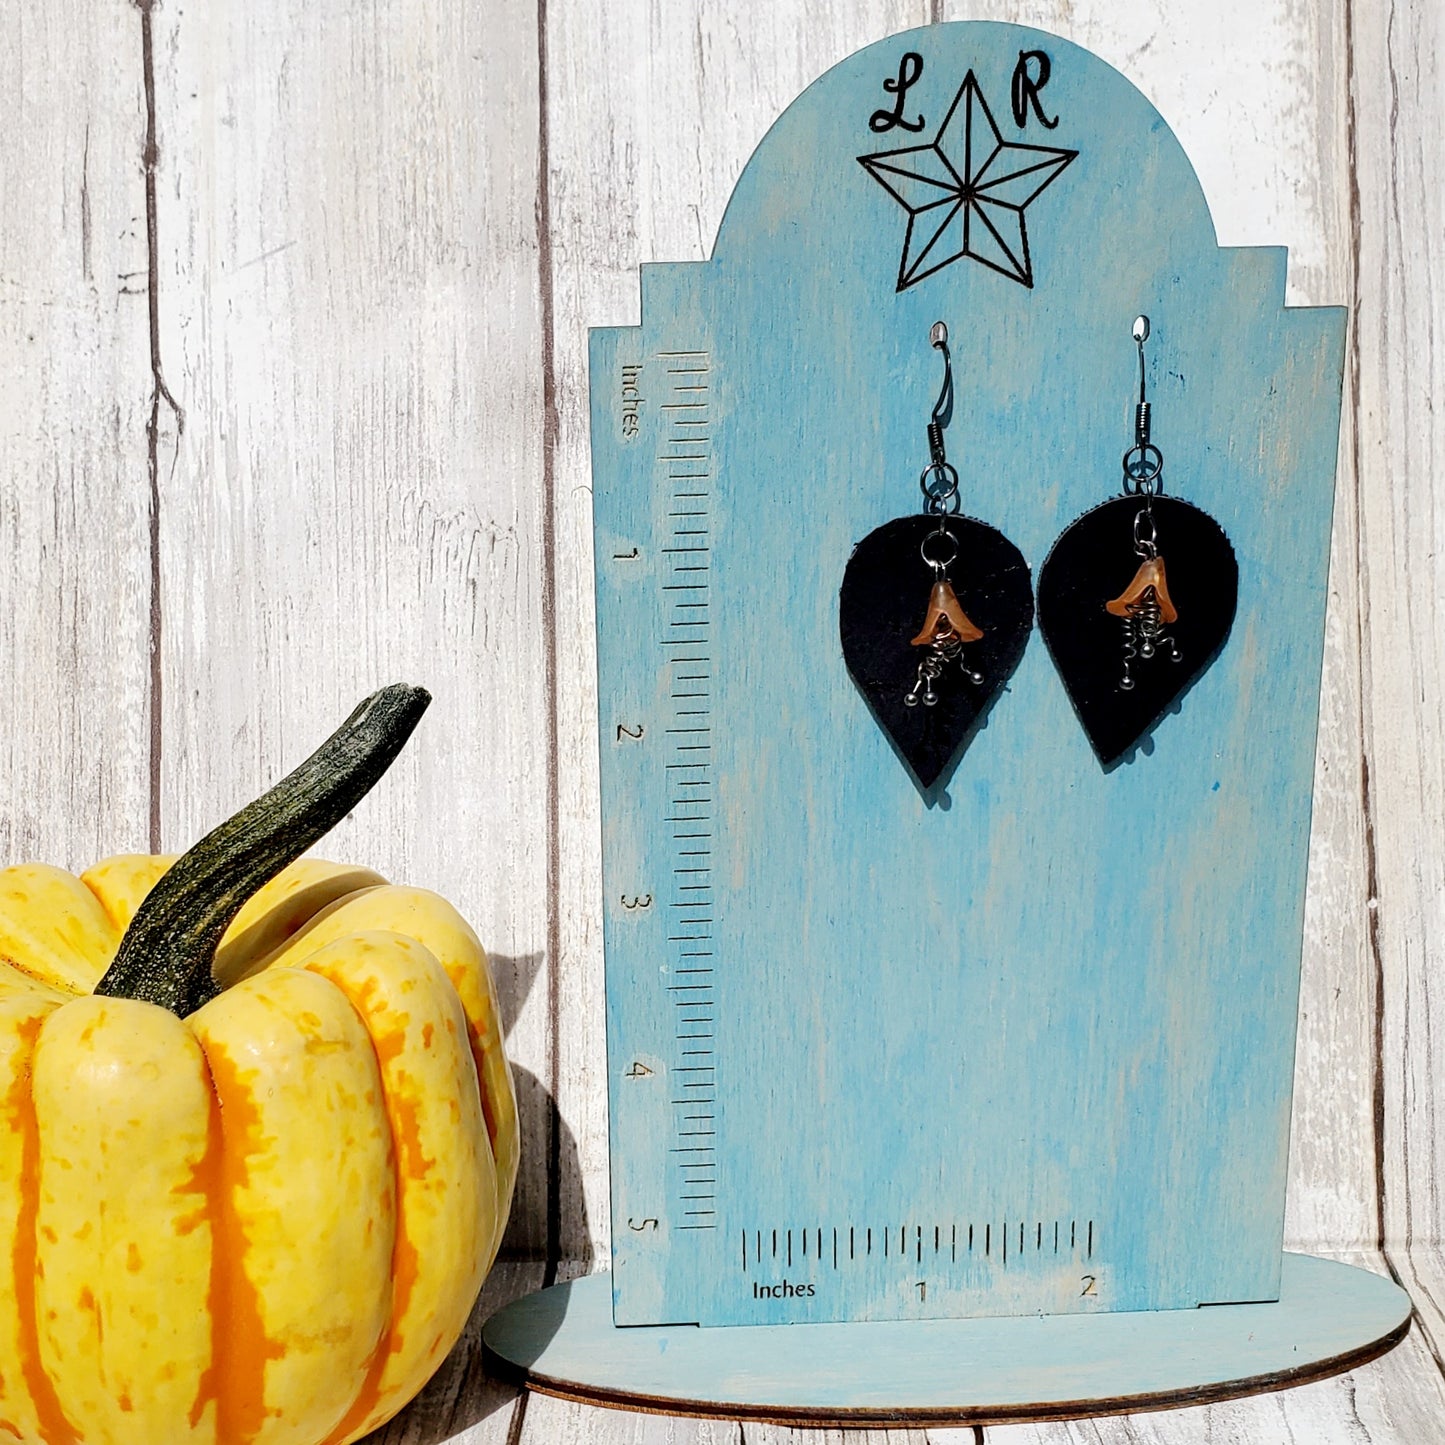 Belladonna - cork earrings - Halloween earrimgs - fall earrimgs - autumn earrings